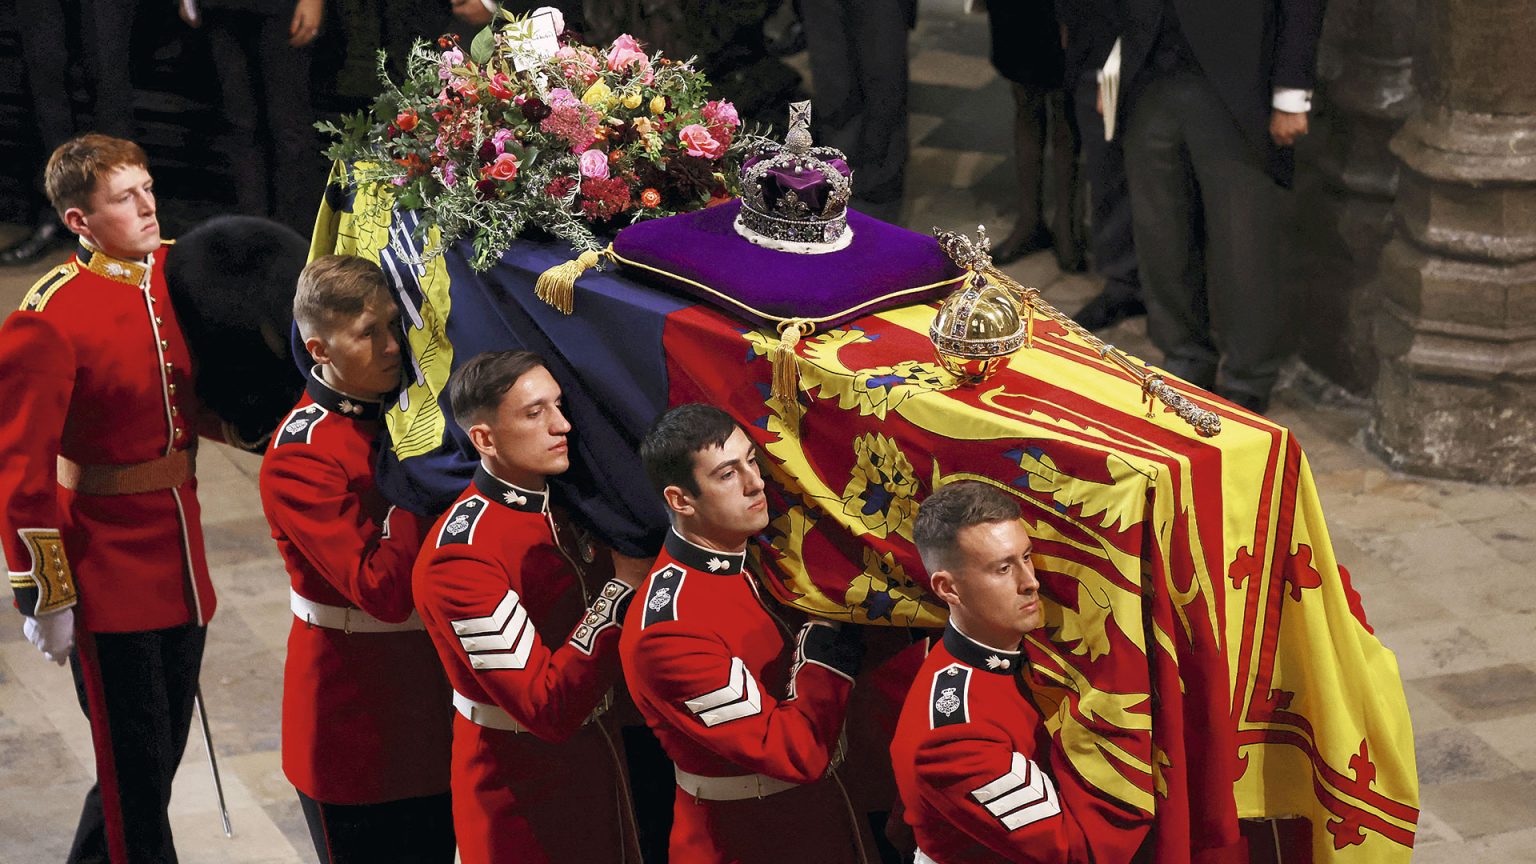 El histórico adiós a Isabel II: todas las imágenes del solemne entierro